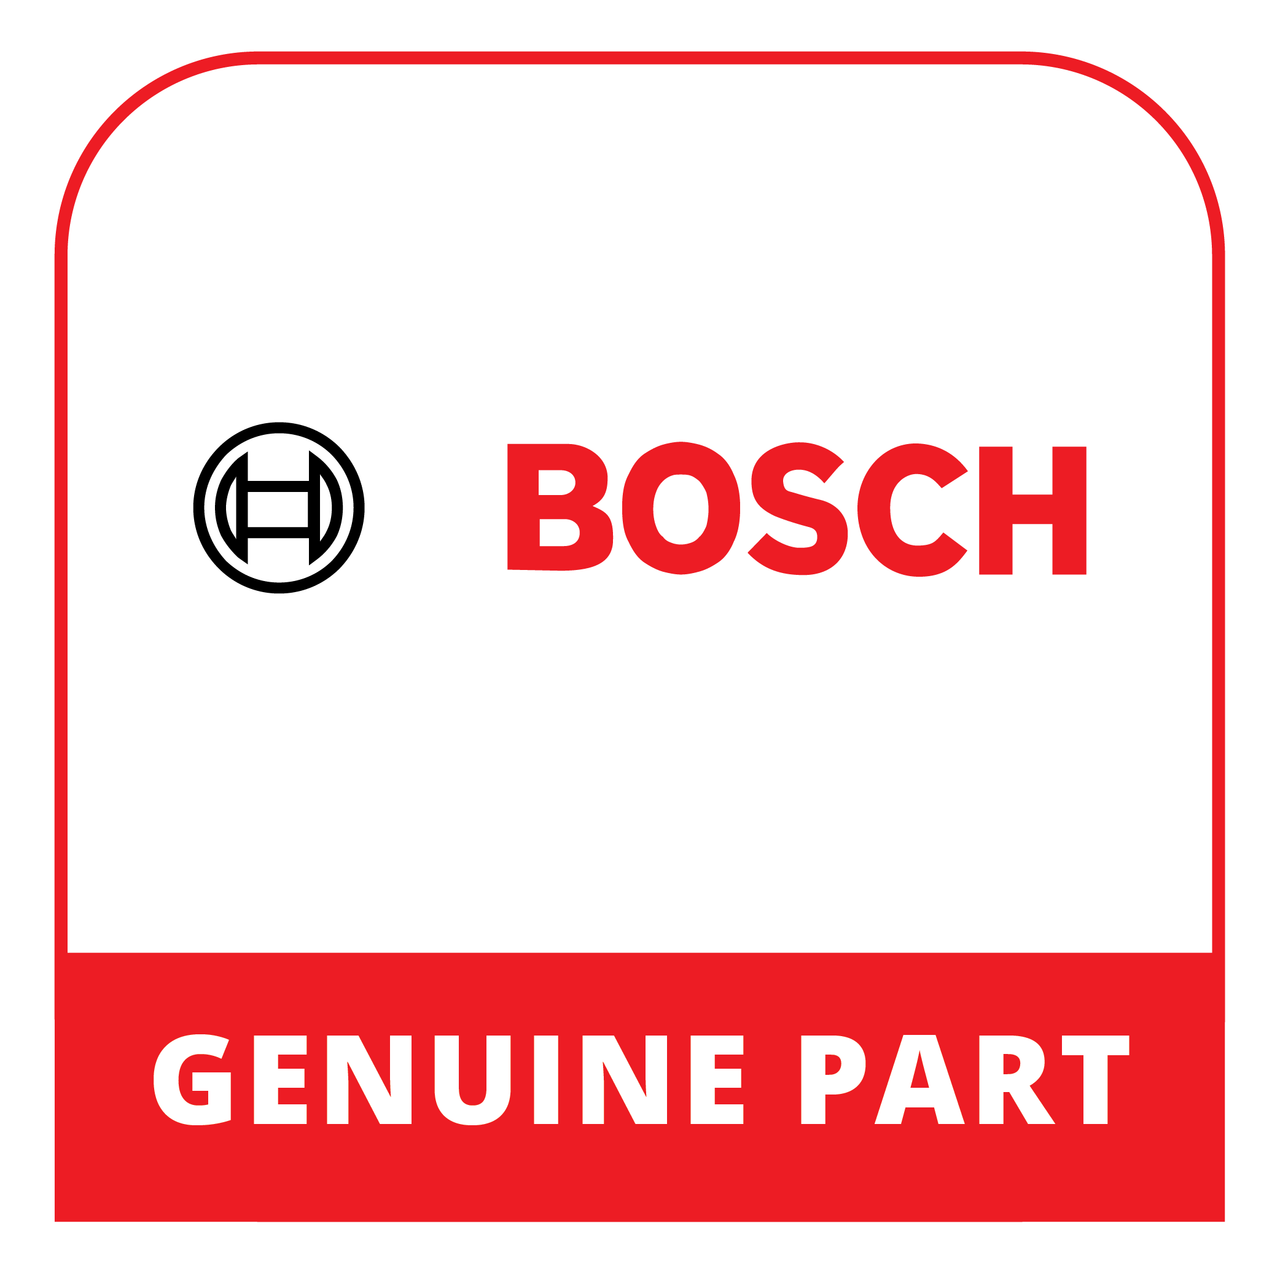 Bosch (Thermador) 20005661 - Door - Genuine Bosch (Thermador) Part